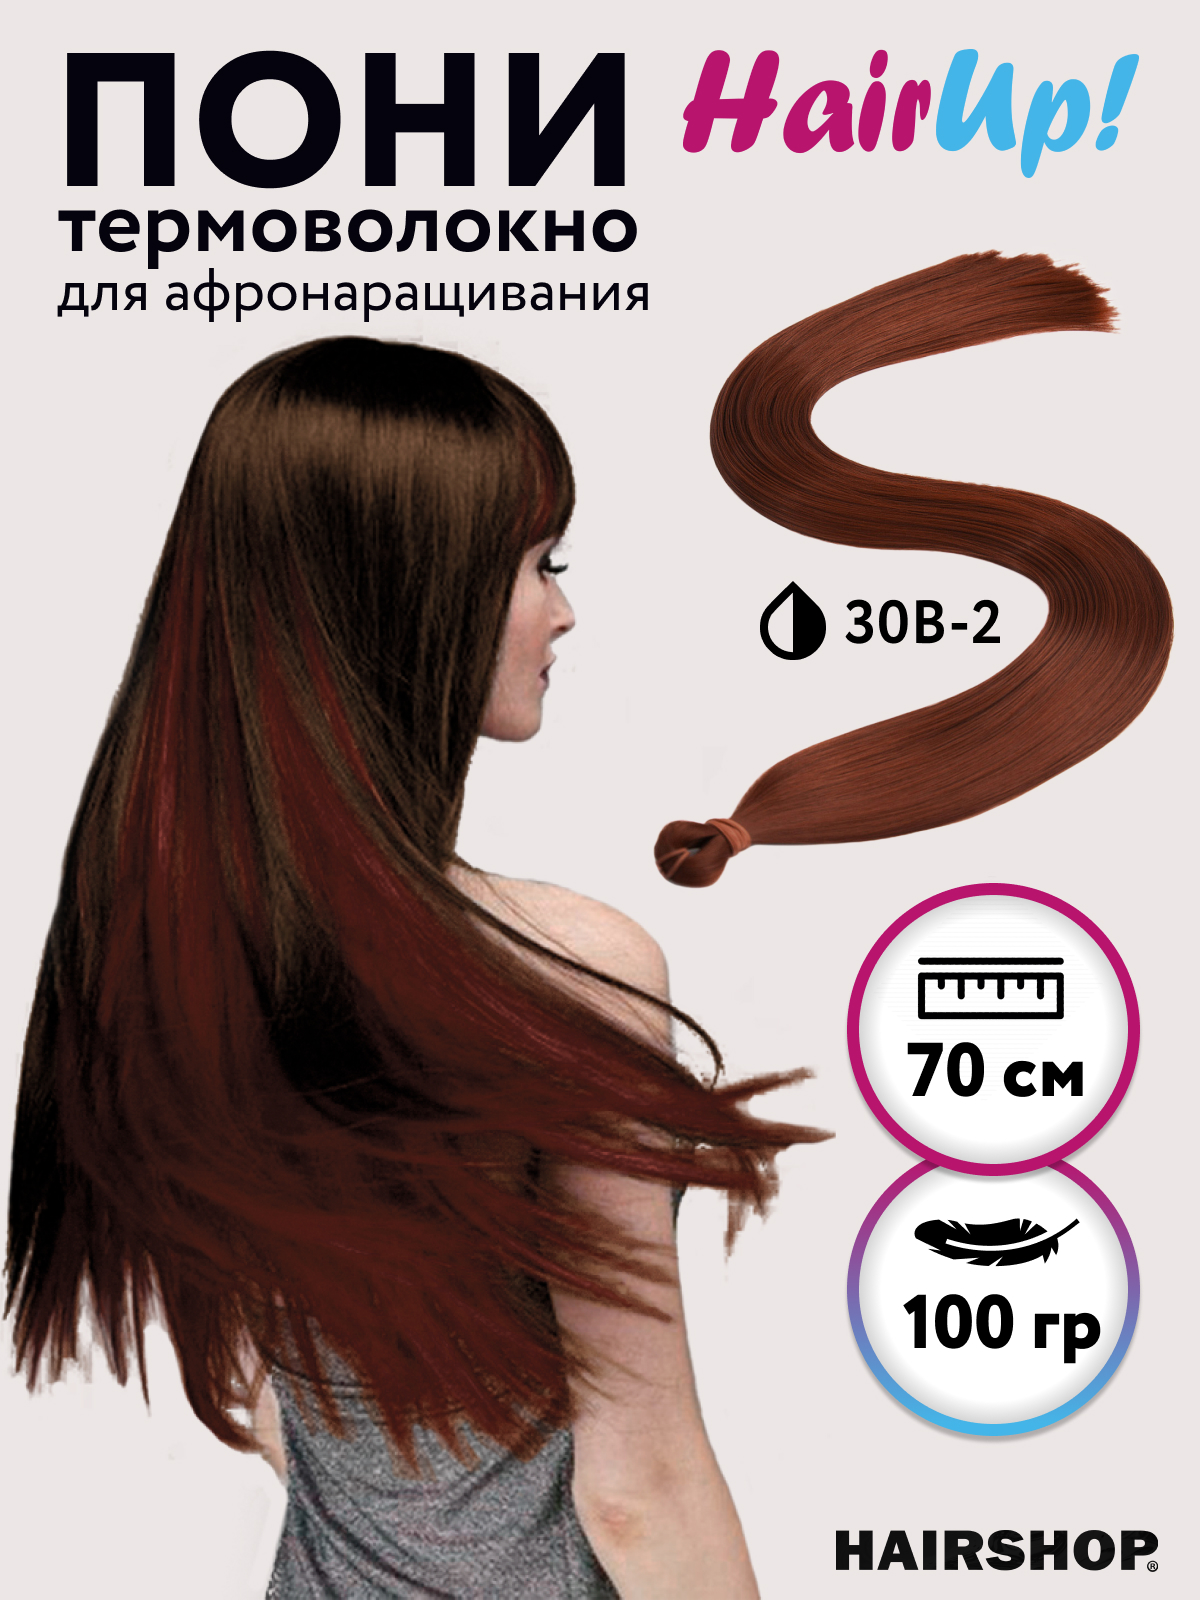 Канекалон Hairshop Пони HairUp для точечного афронаращивания прямые 30B-2 1,4м 100г канекалон hairshop пони hairup для точечного афронаращивания 118 1 бордо 1 4м